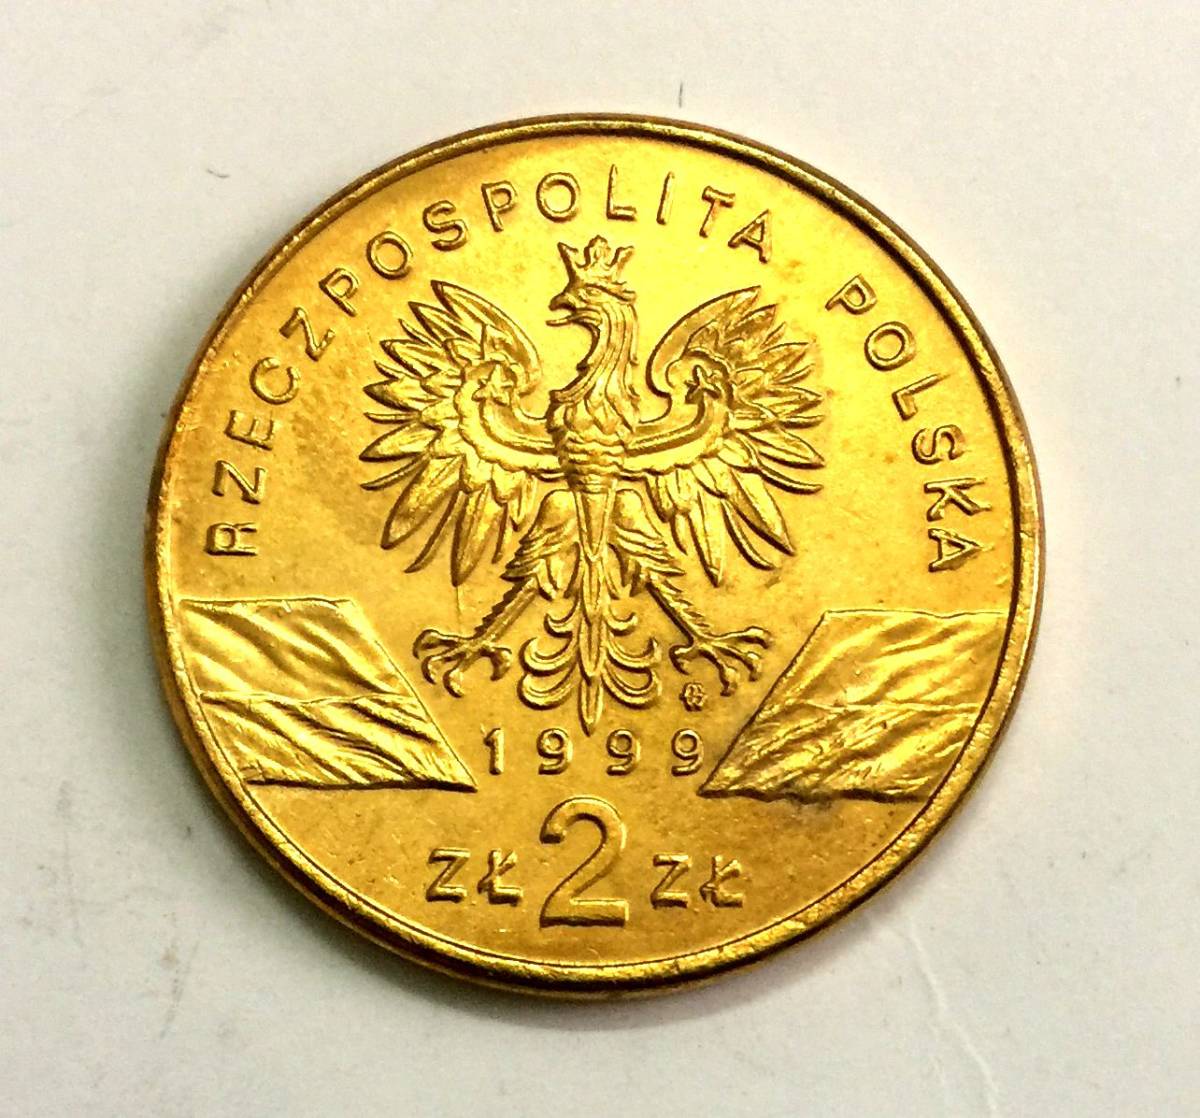  原文:ポーランド 金貨 1999 2大型金貨 激稀少!!! 直径27mm 重さ8.9g